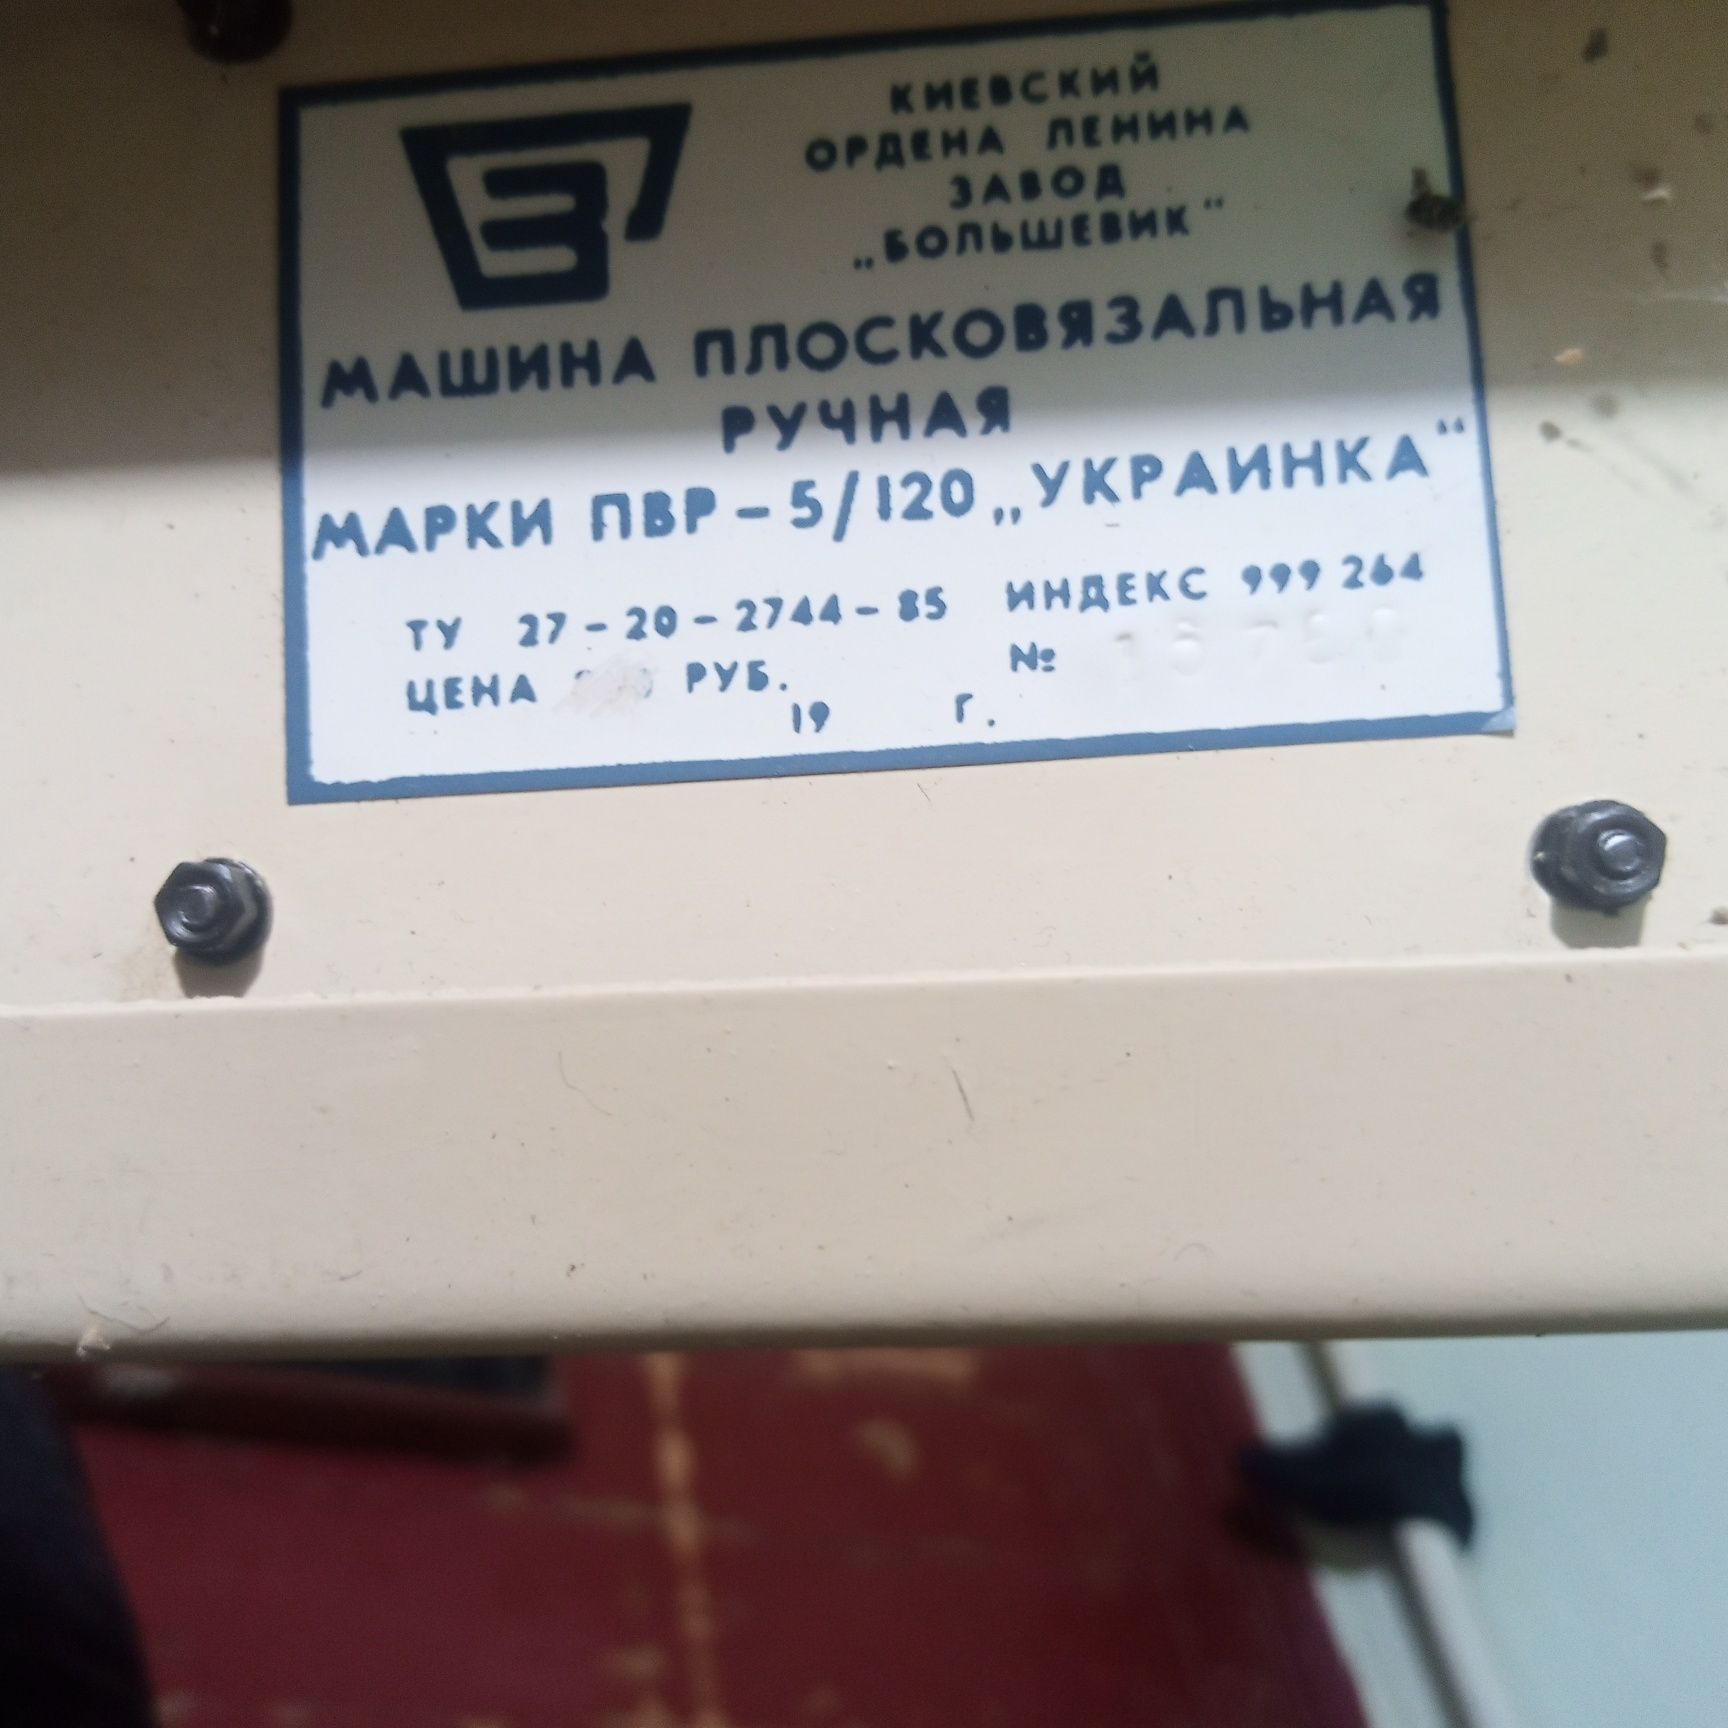 ручну плосков'язальну машину марки ПВР 5-120 "Українка".